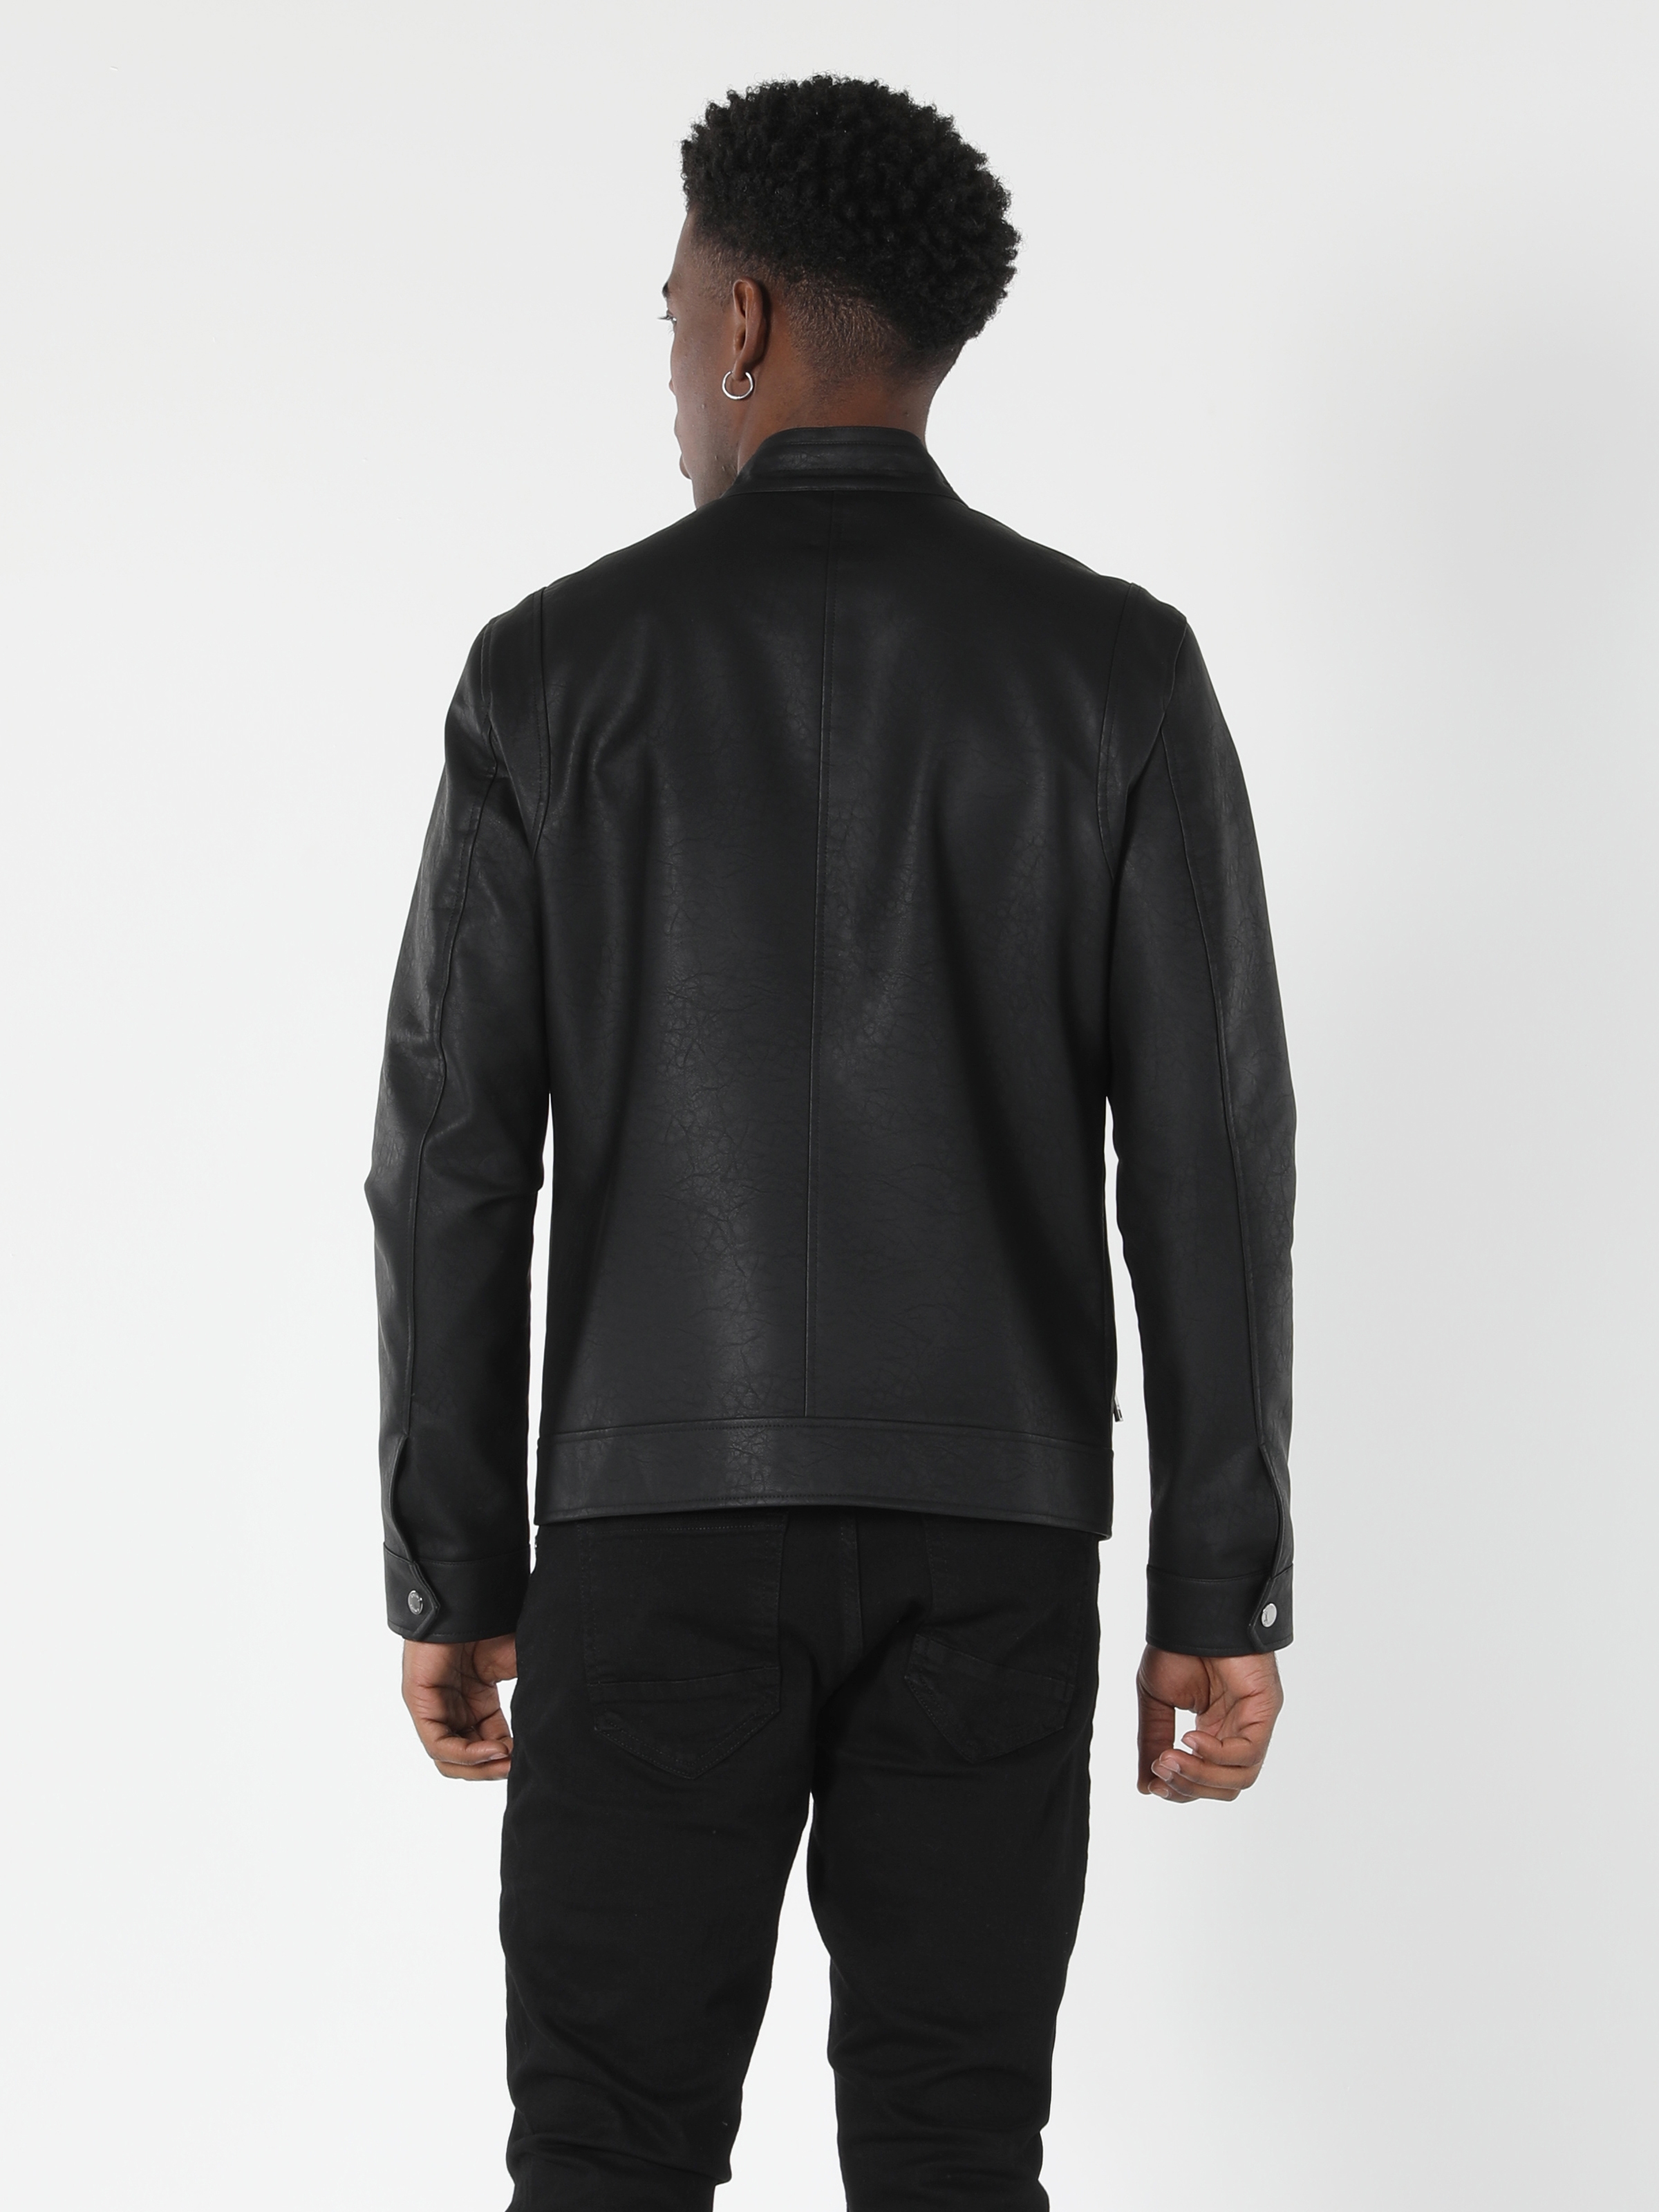 Afficher les détails de Manteau En Simili Cuir Noir Coupe Slim Pour Homme